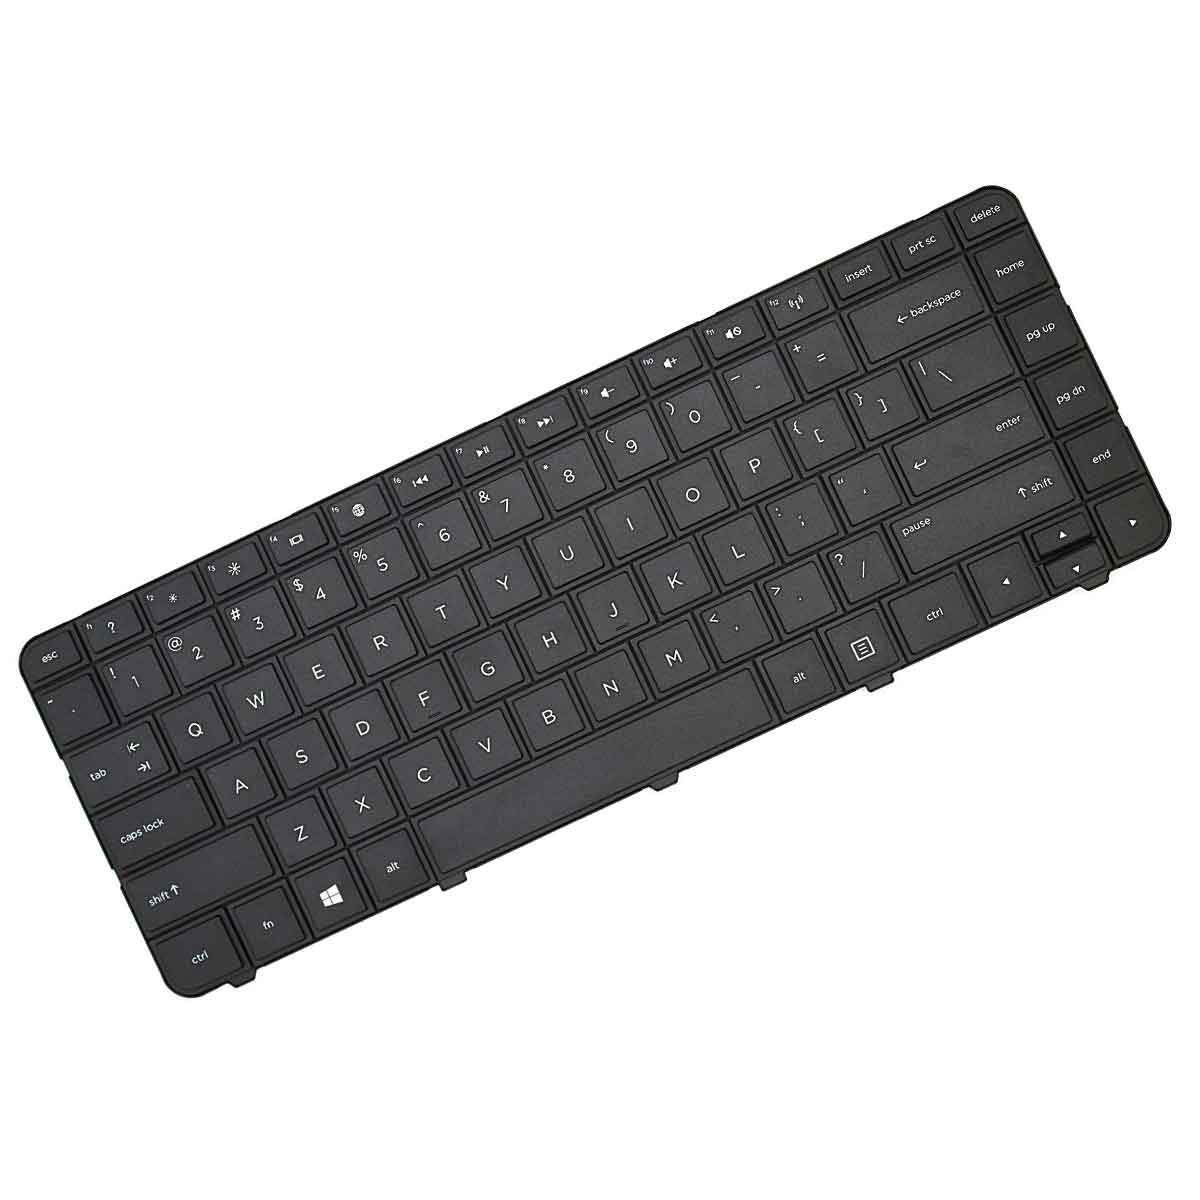 کیبورد لپ تاپ اچ پی Keyboard Laptop Hp G6-1000